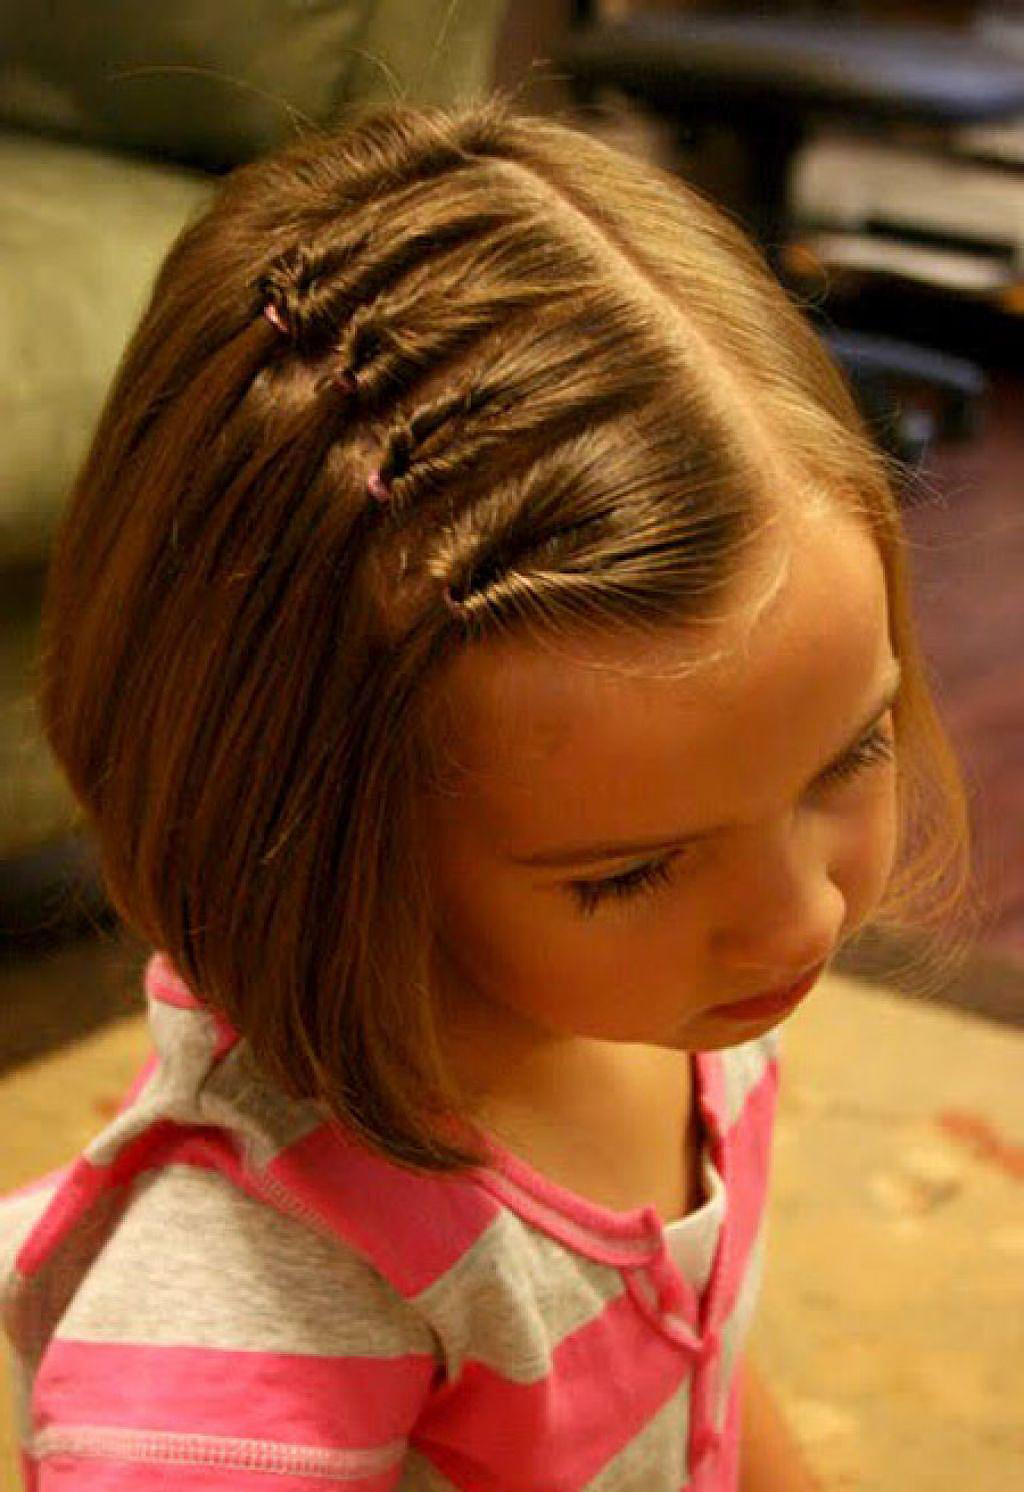 Топ-20 причесок для девочек на длинные волосы: в сад, школу, подросткам